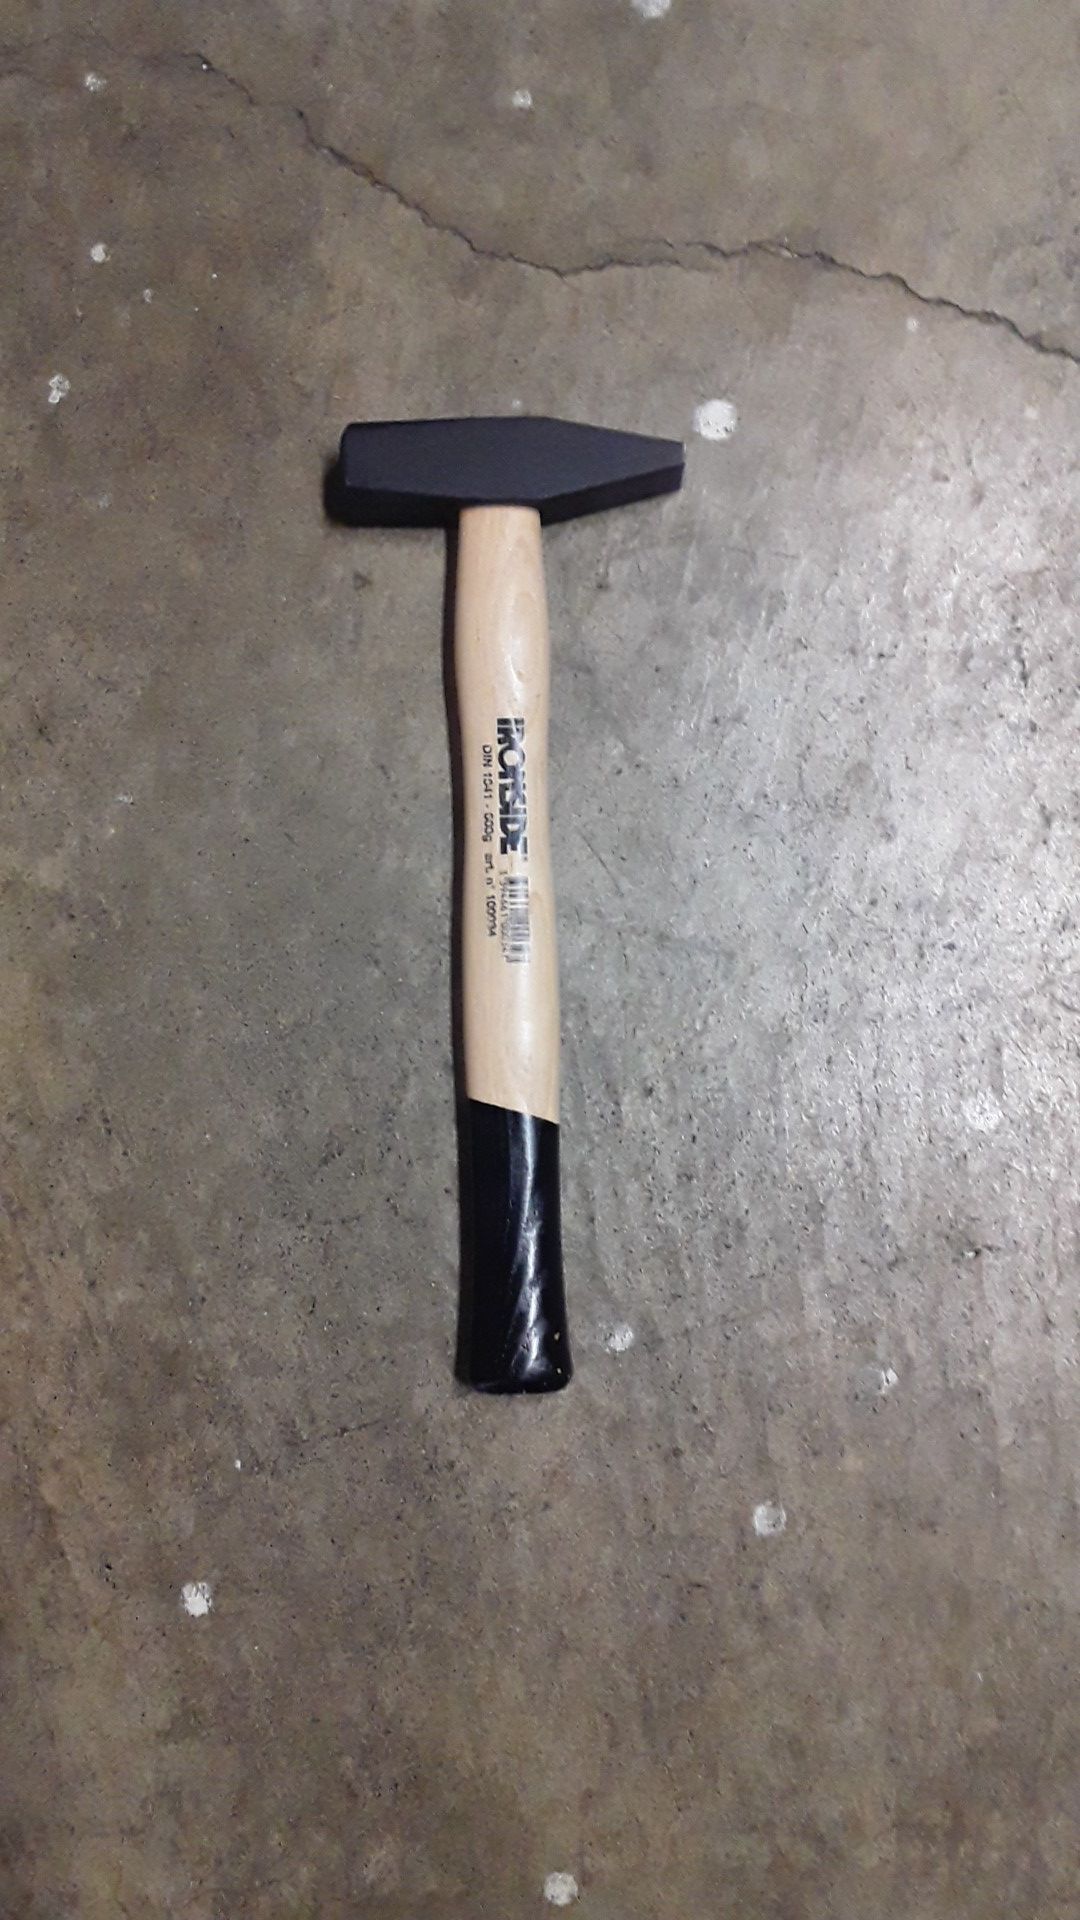 1.8lbs German style engineer hammer Ironside Tools #100034